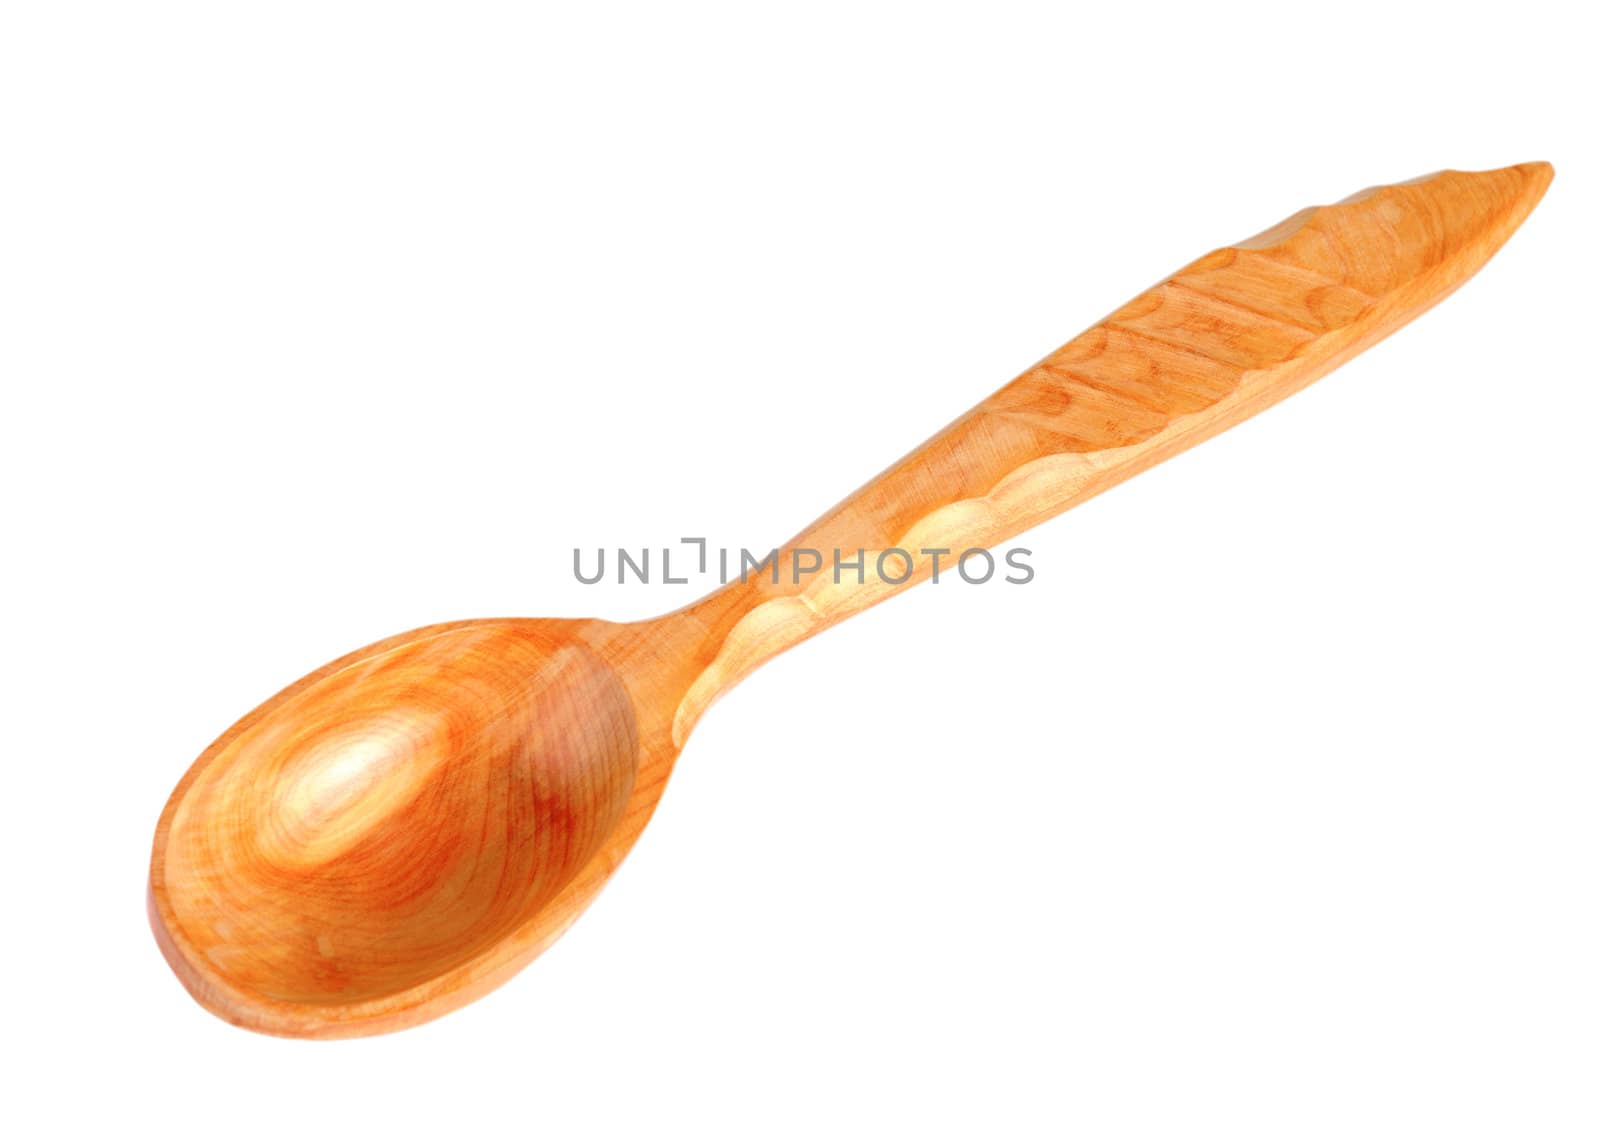 Wooden spoon by iryna_rasko